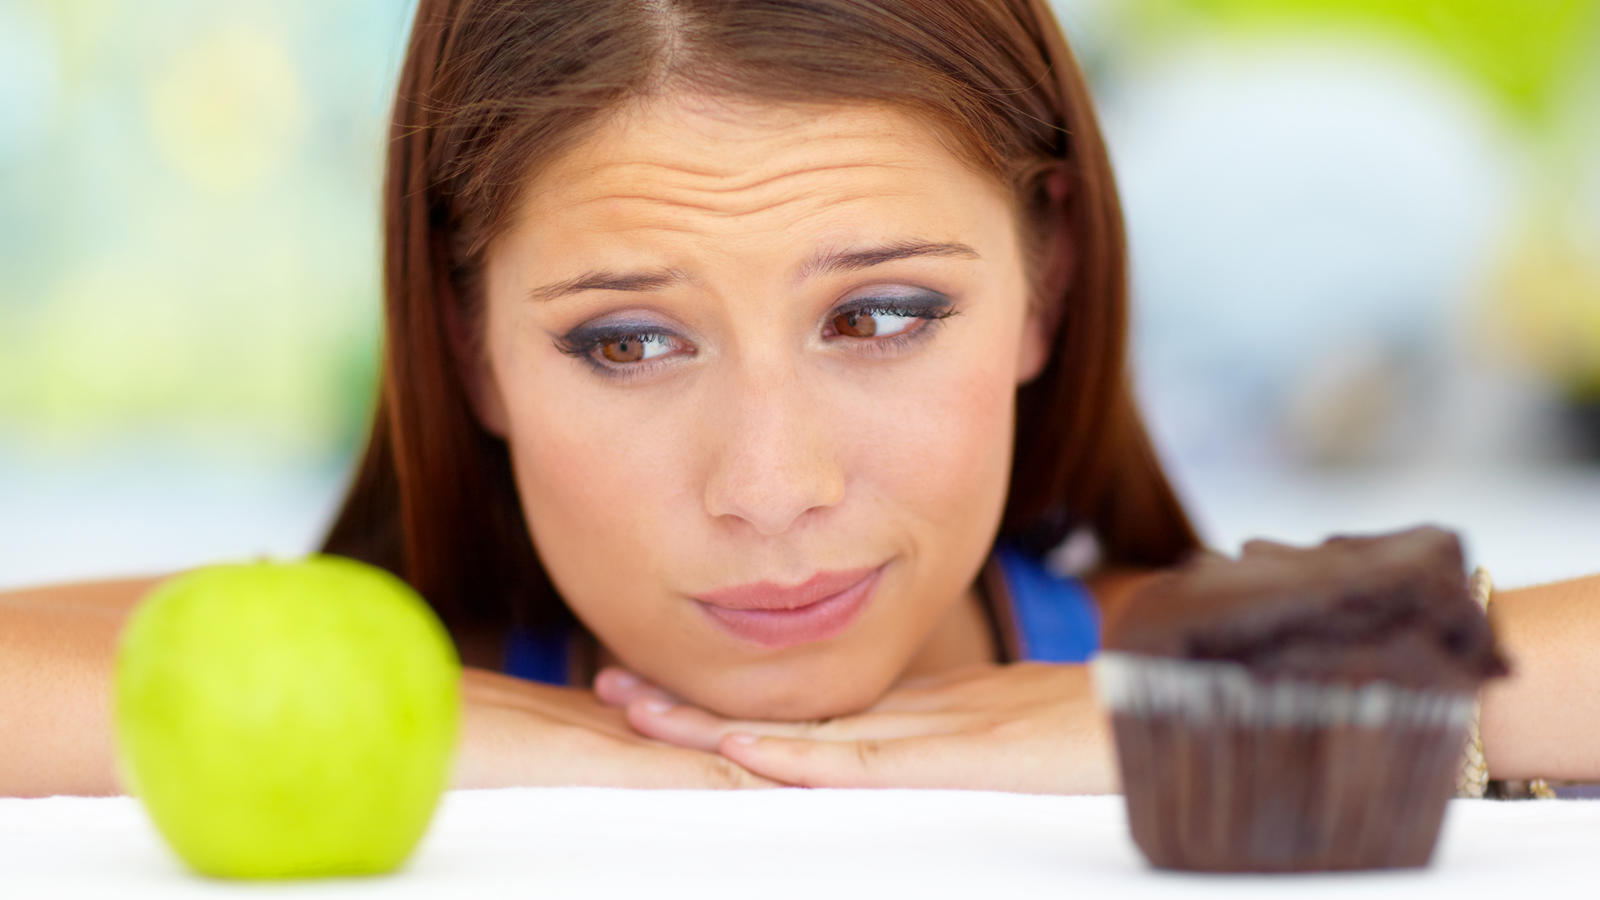 Intuitives Essen: Junge Frau kann sich zwischen Apfel und Muffin nicht entscheiden.